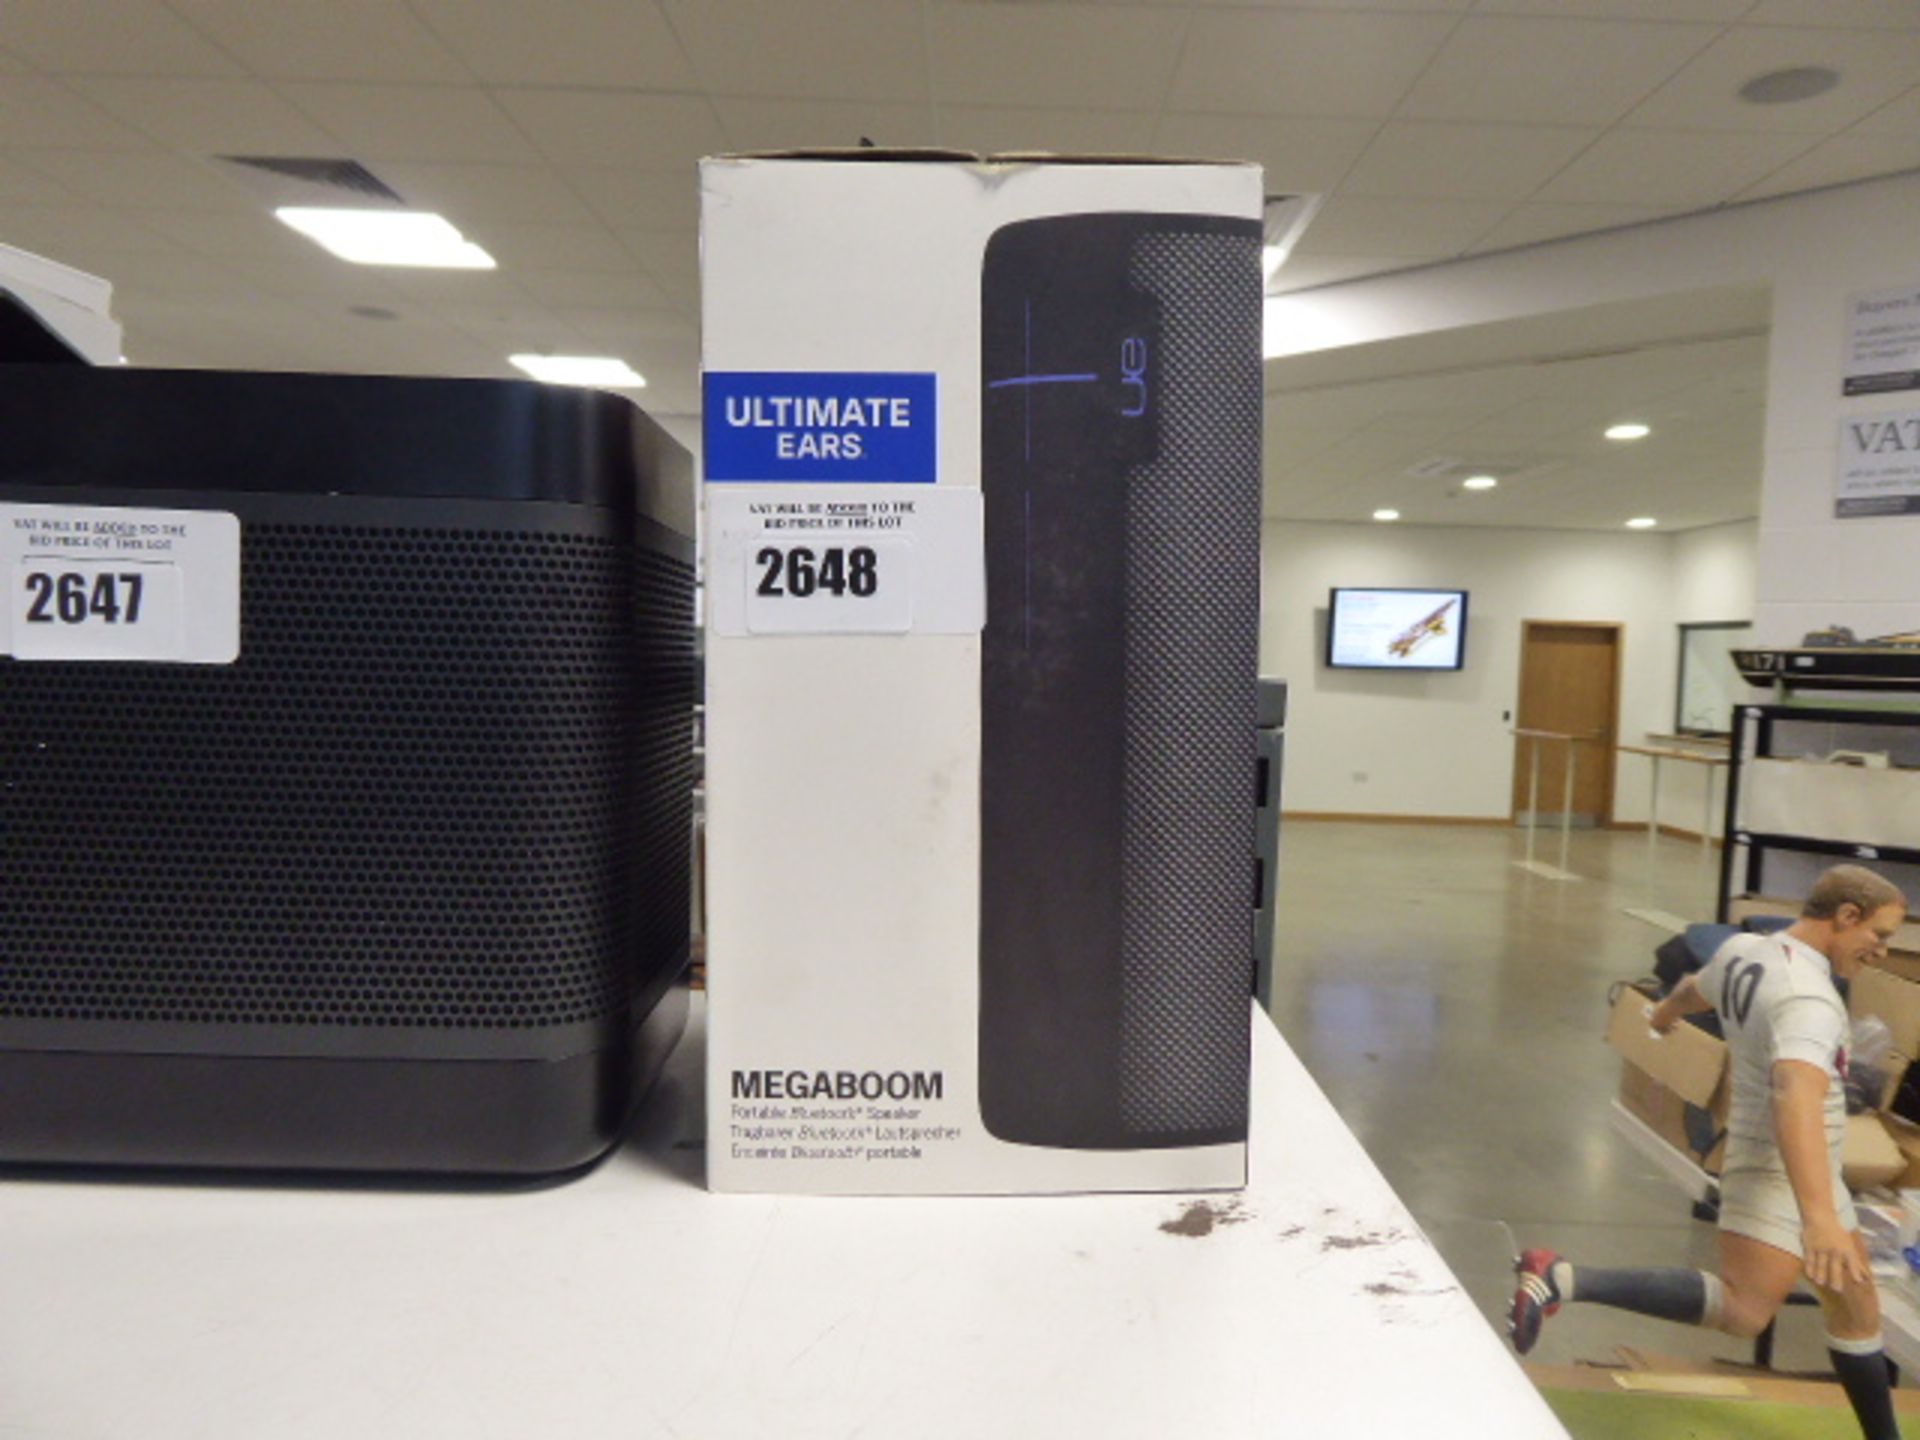 2551 UE Ultimate Ears Megaboom portable bluetooth speaker in box